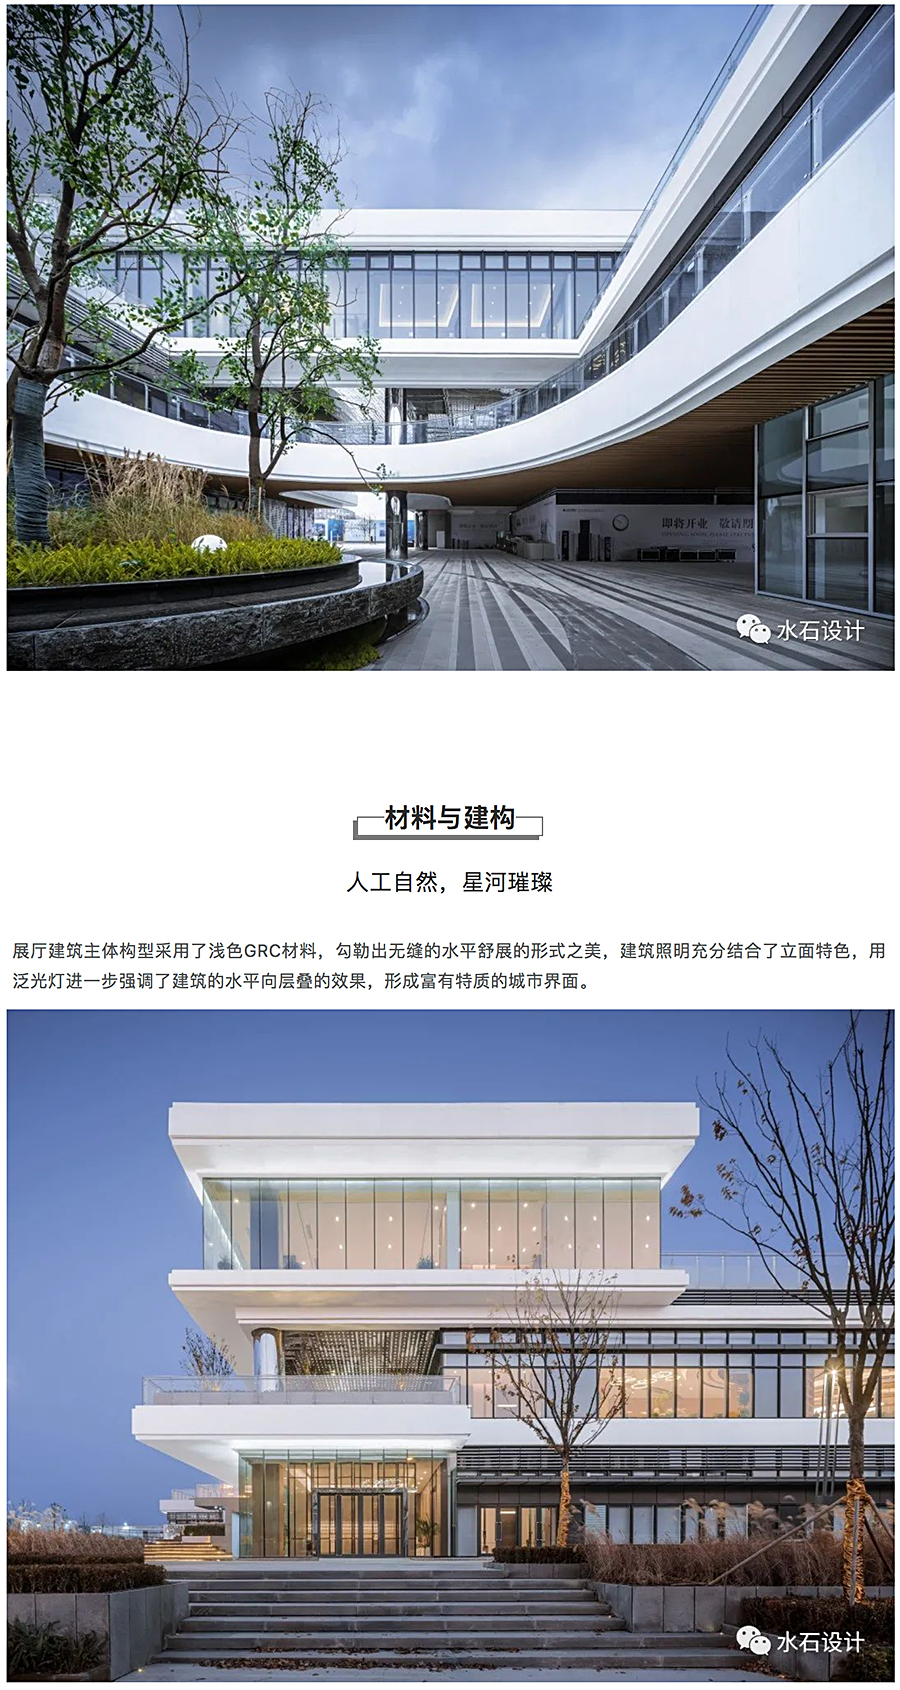 建构立体的城市社区公园-_-中国城乡总部经济产业园城市展厅_0010_图层-11.jpg